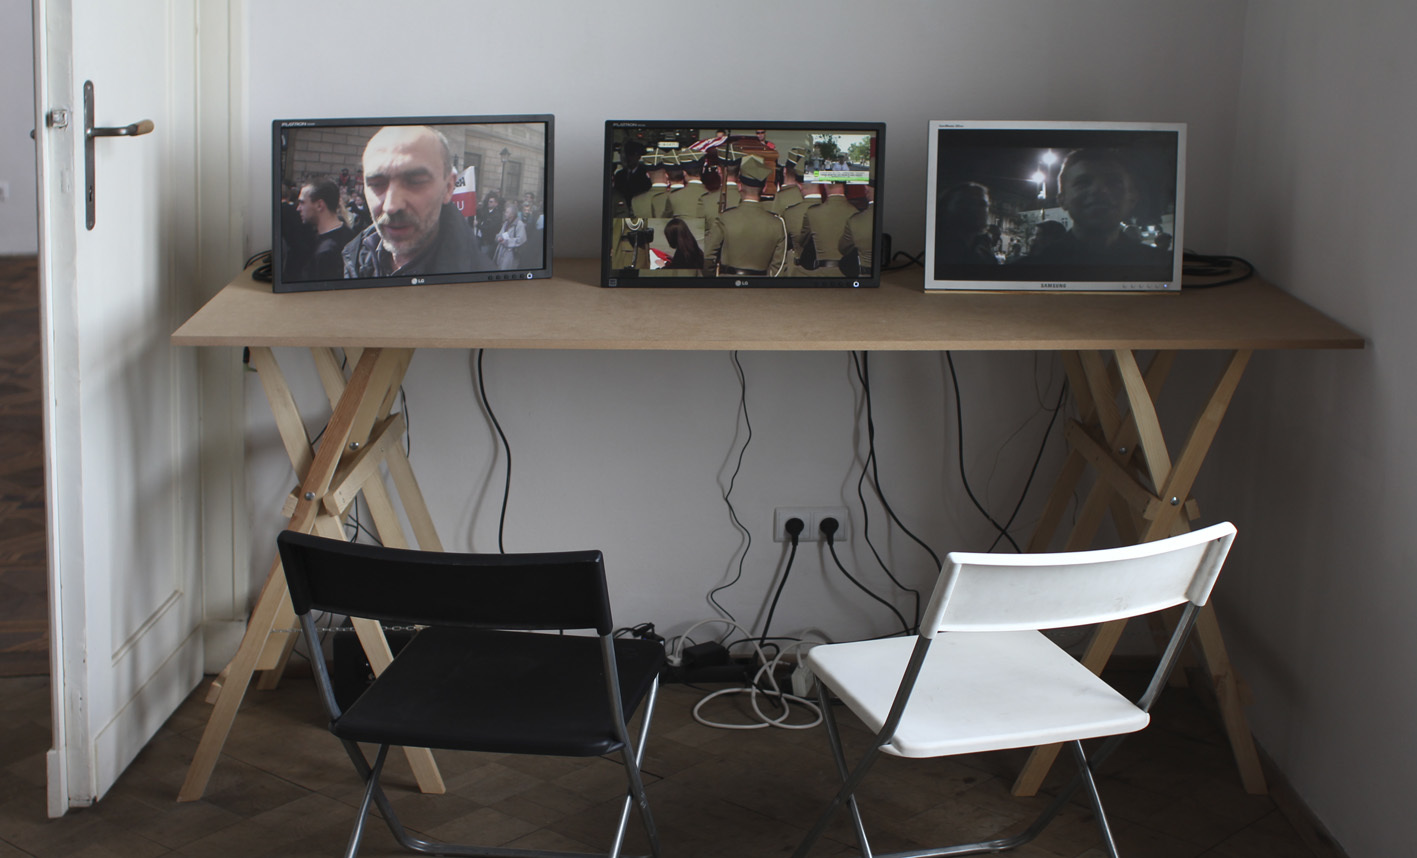 Instalacja wideo, Christoph Draeger, The Men who Stole the Moon, 2010, wideo HD, 26 min i A. Żmijewski, Katastrofa, 2010, wideo HD, 56 min